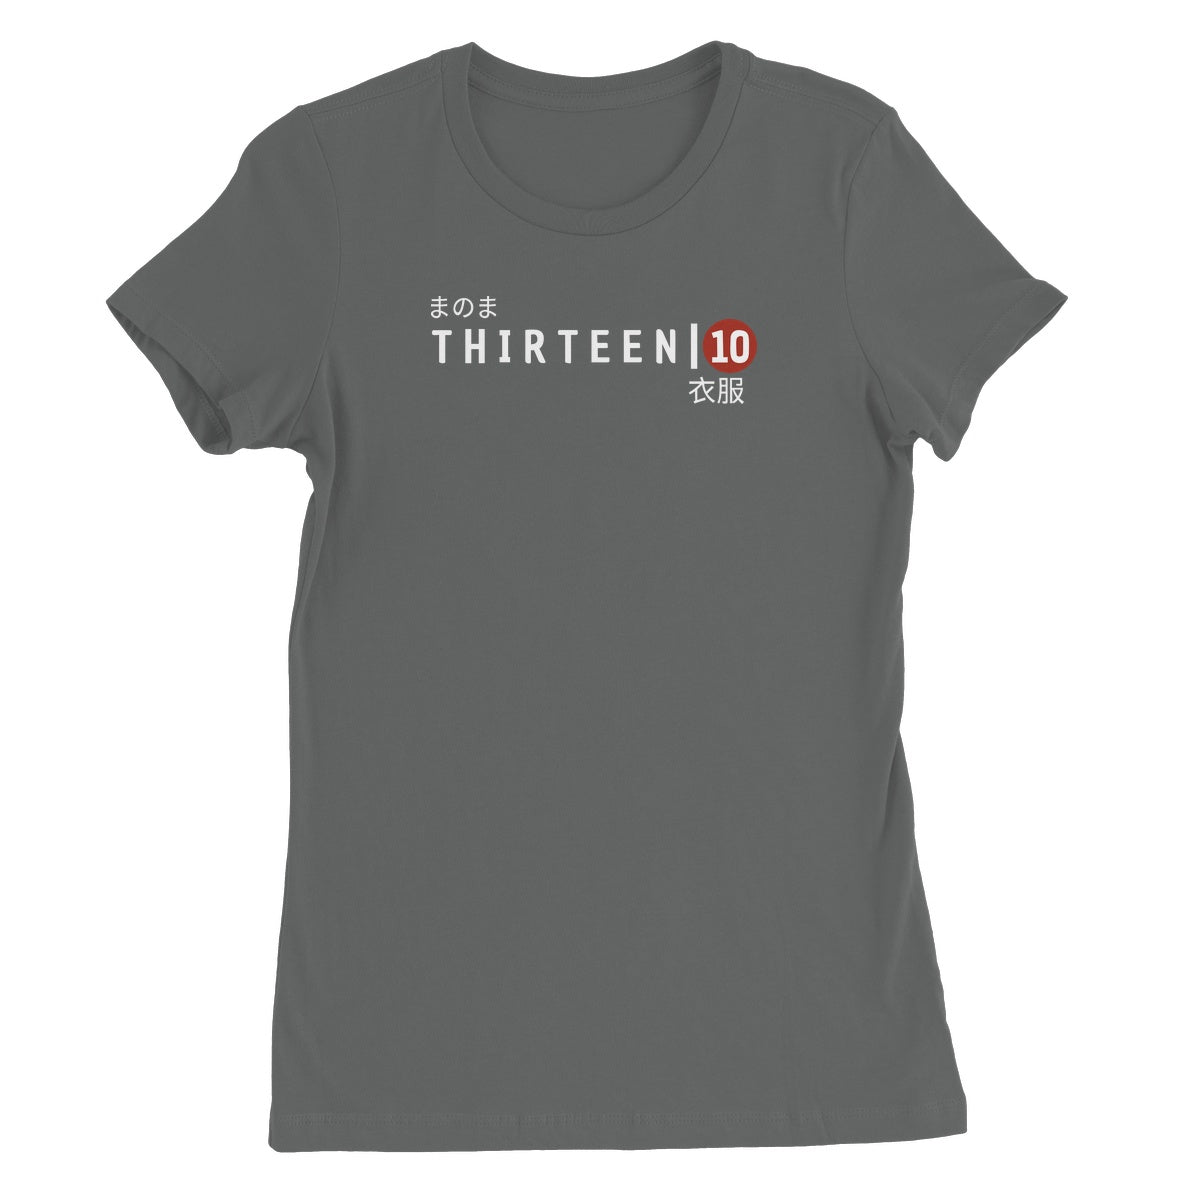 Thirteen | 10  Japan Chest Logo Women's Short Sleeve T-Shirt